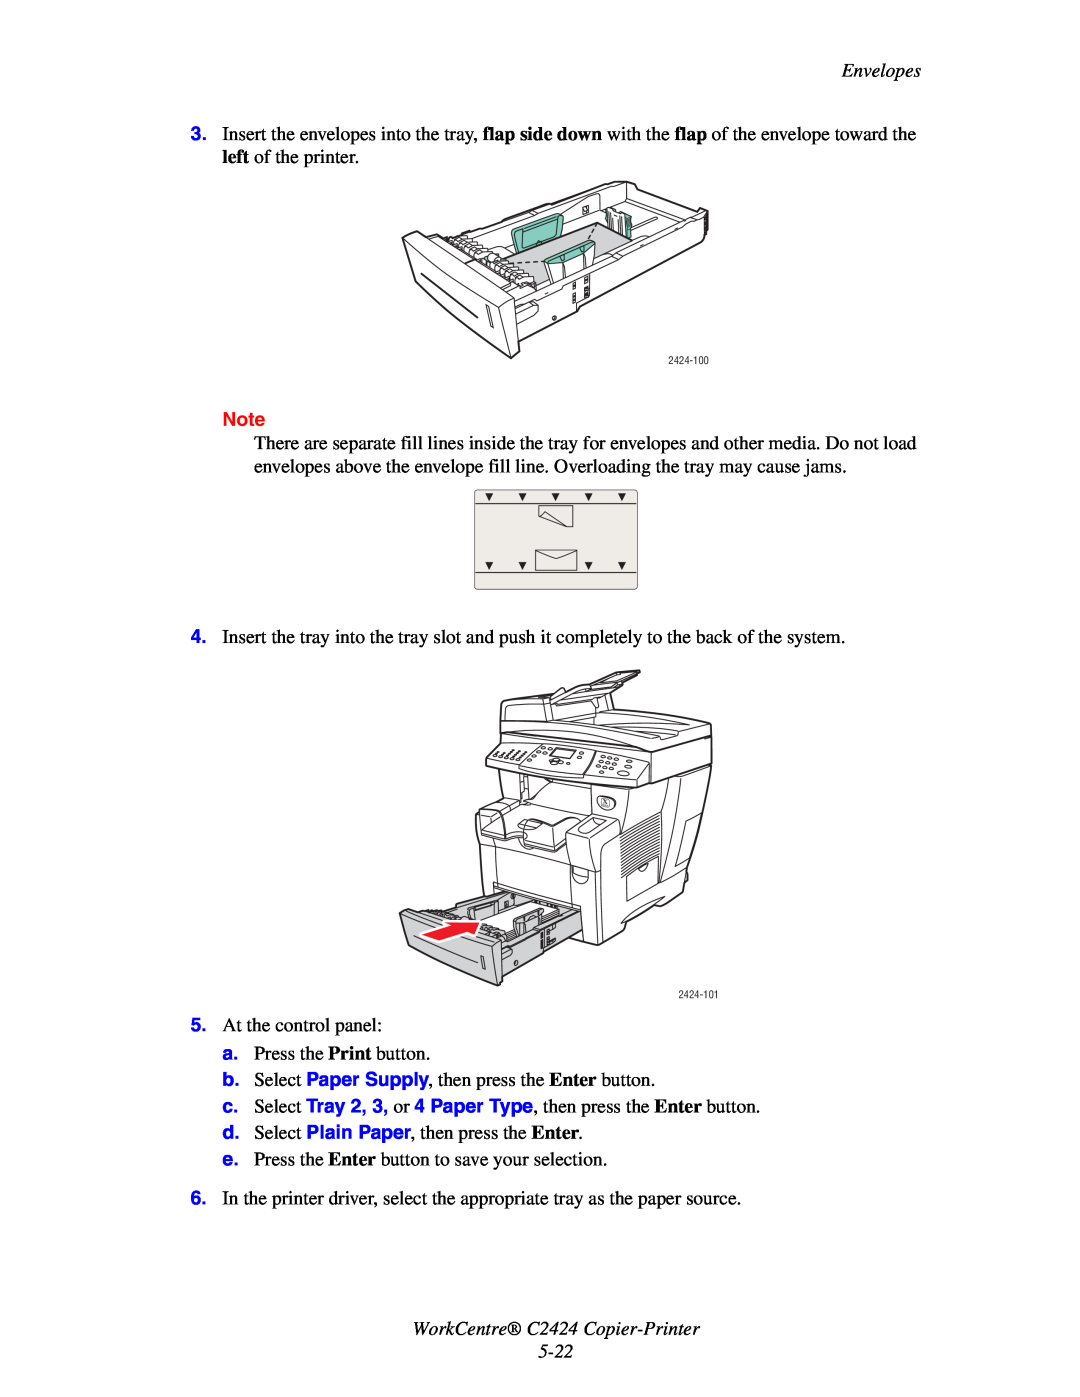 2Wire C424 manual WorkCentre C2424 Copier-Printer, Envelopes 